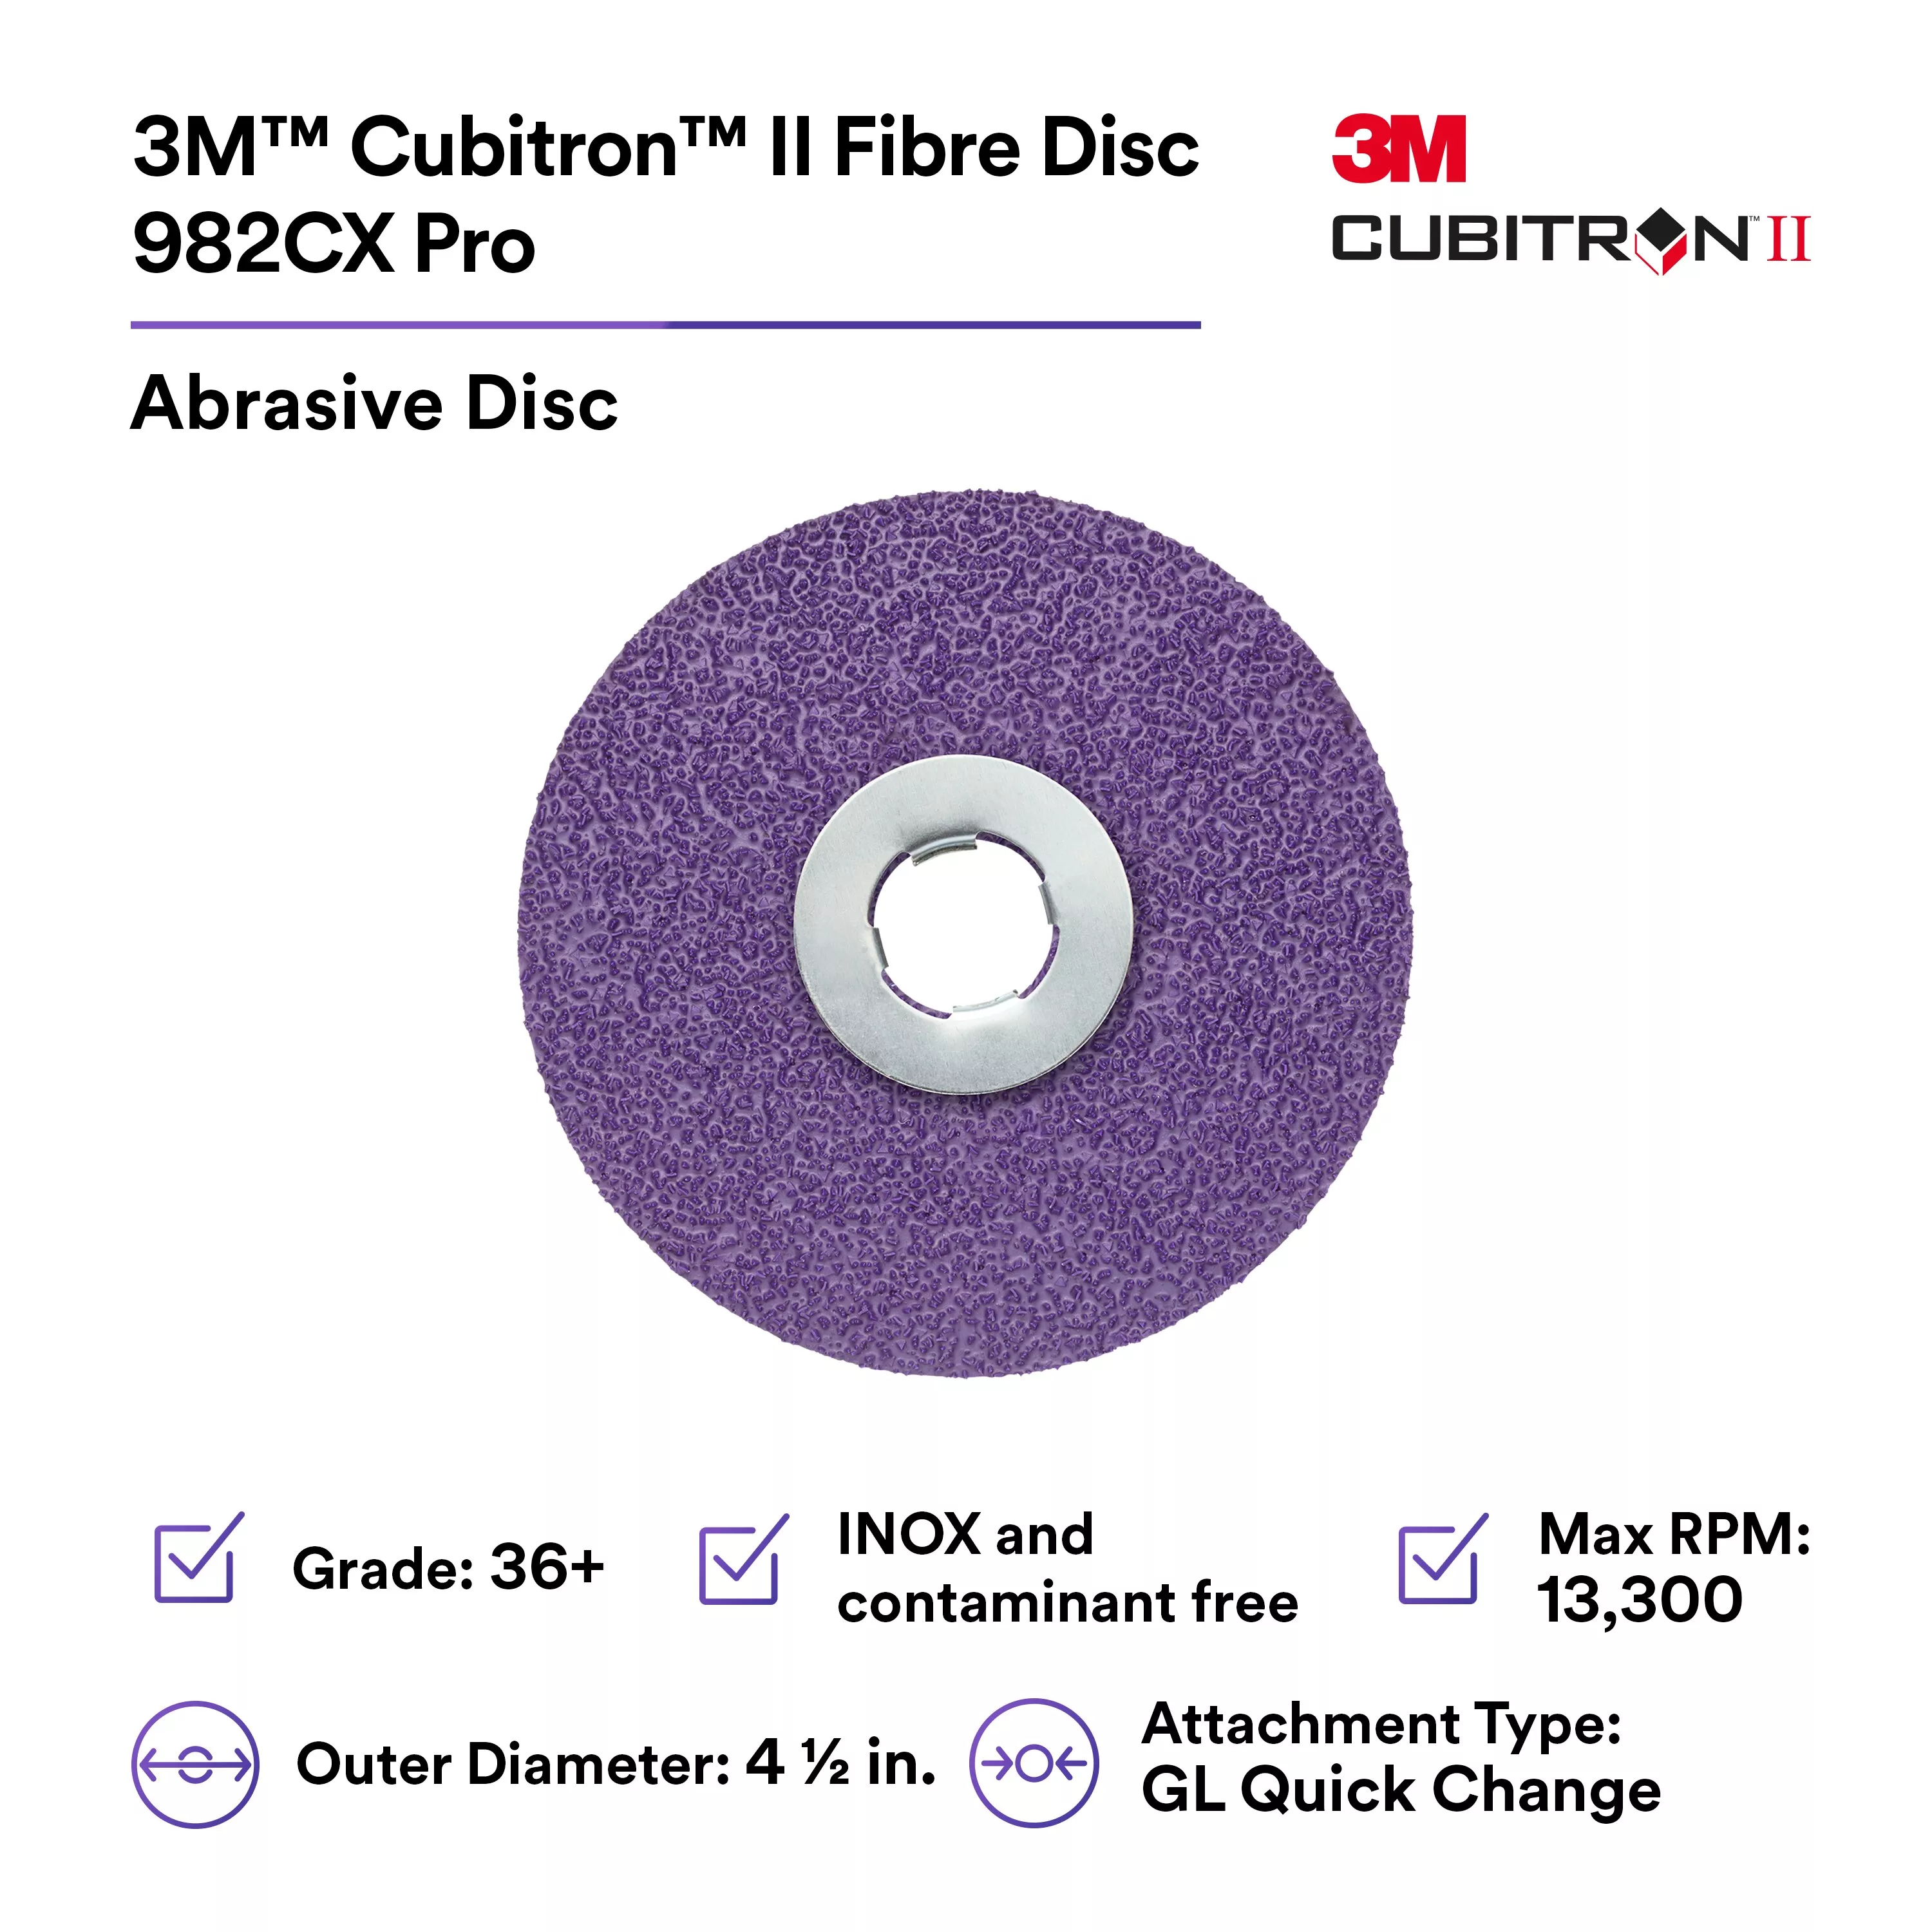 Product Number 982CX | 3M™ Cubitron™ II Fibre Disc 982CX Pro